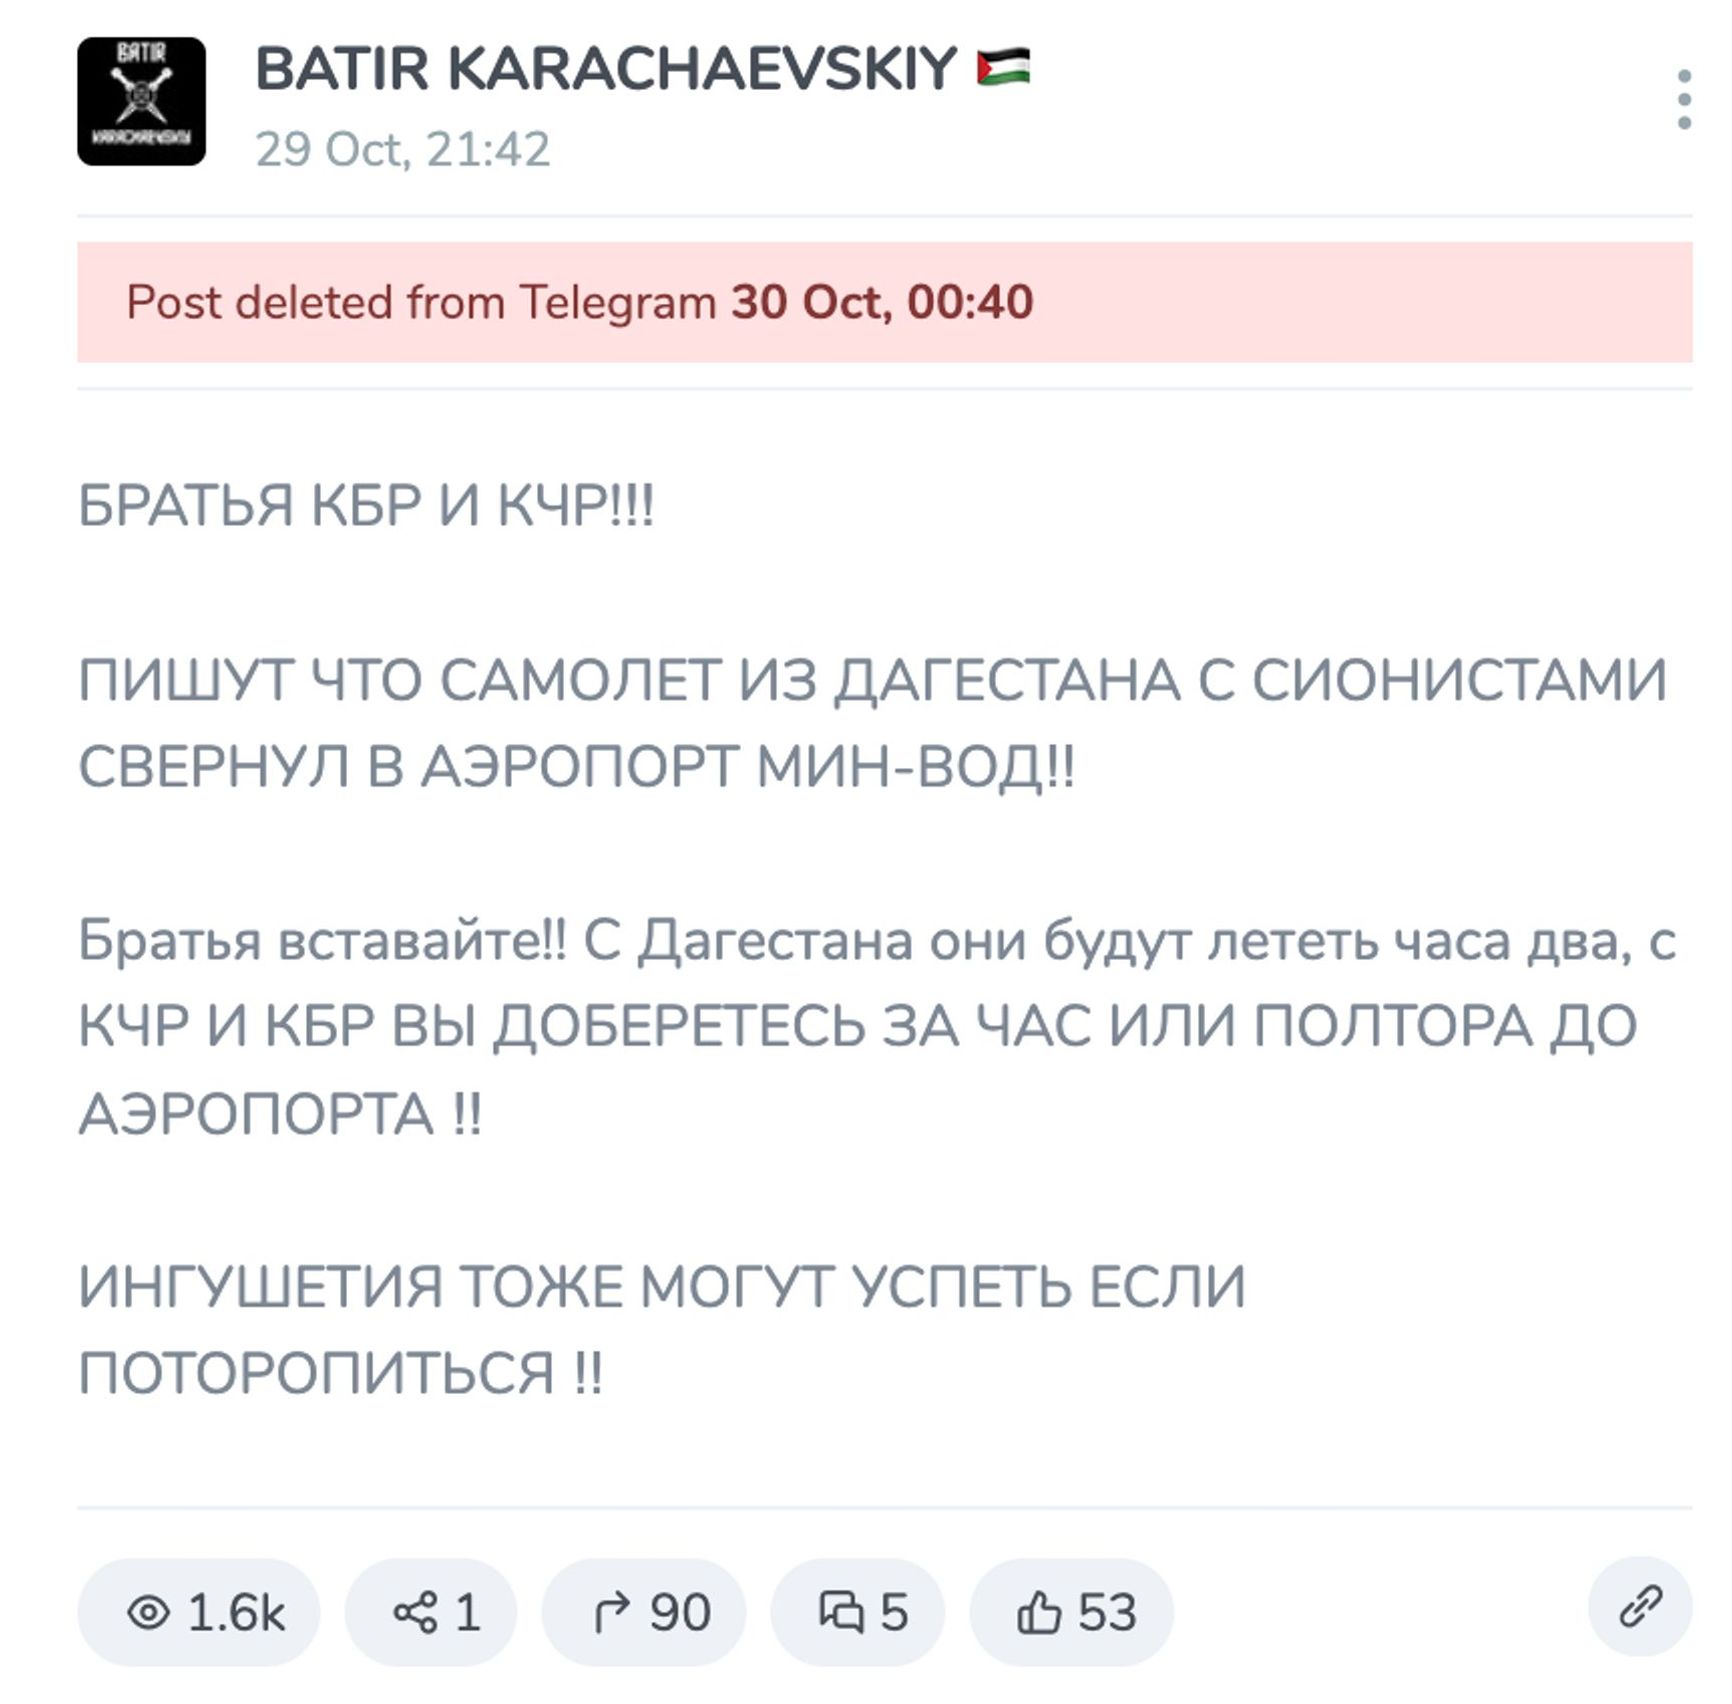 Архивная копия сообщения в Telegram-канале, 29 октября